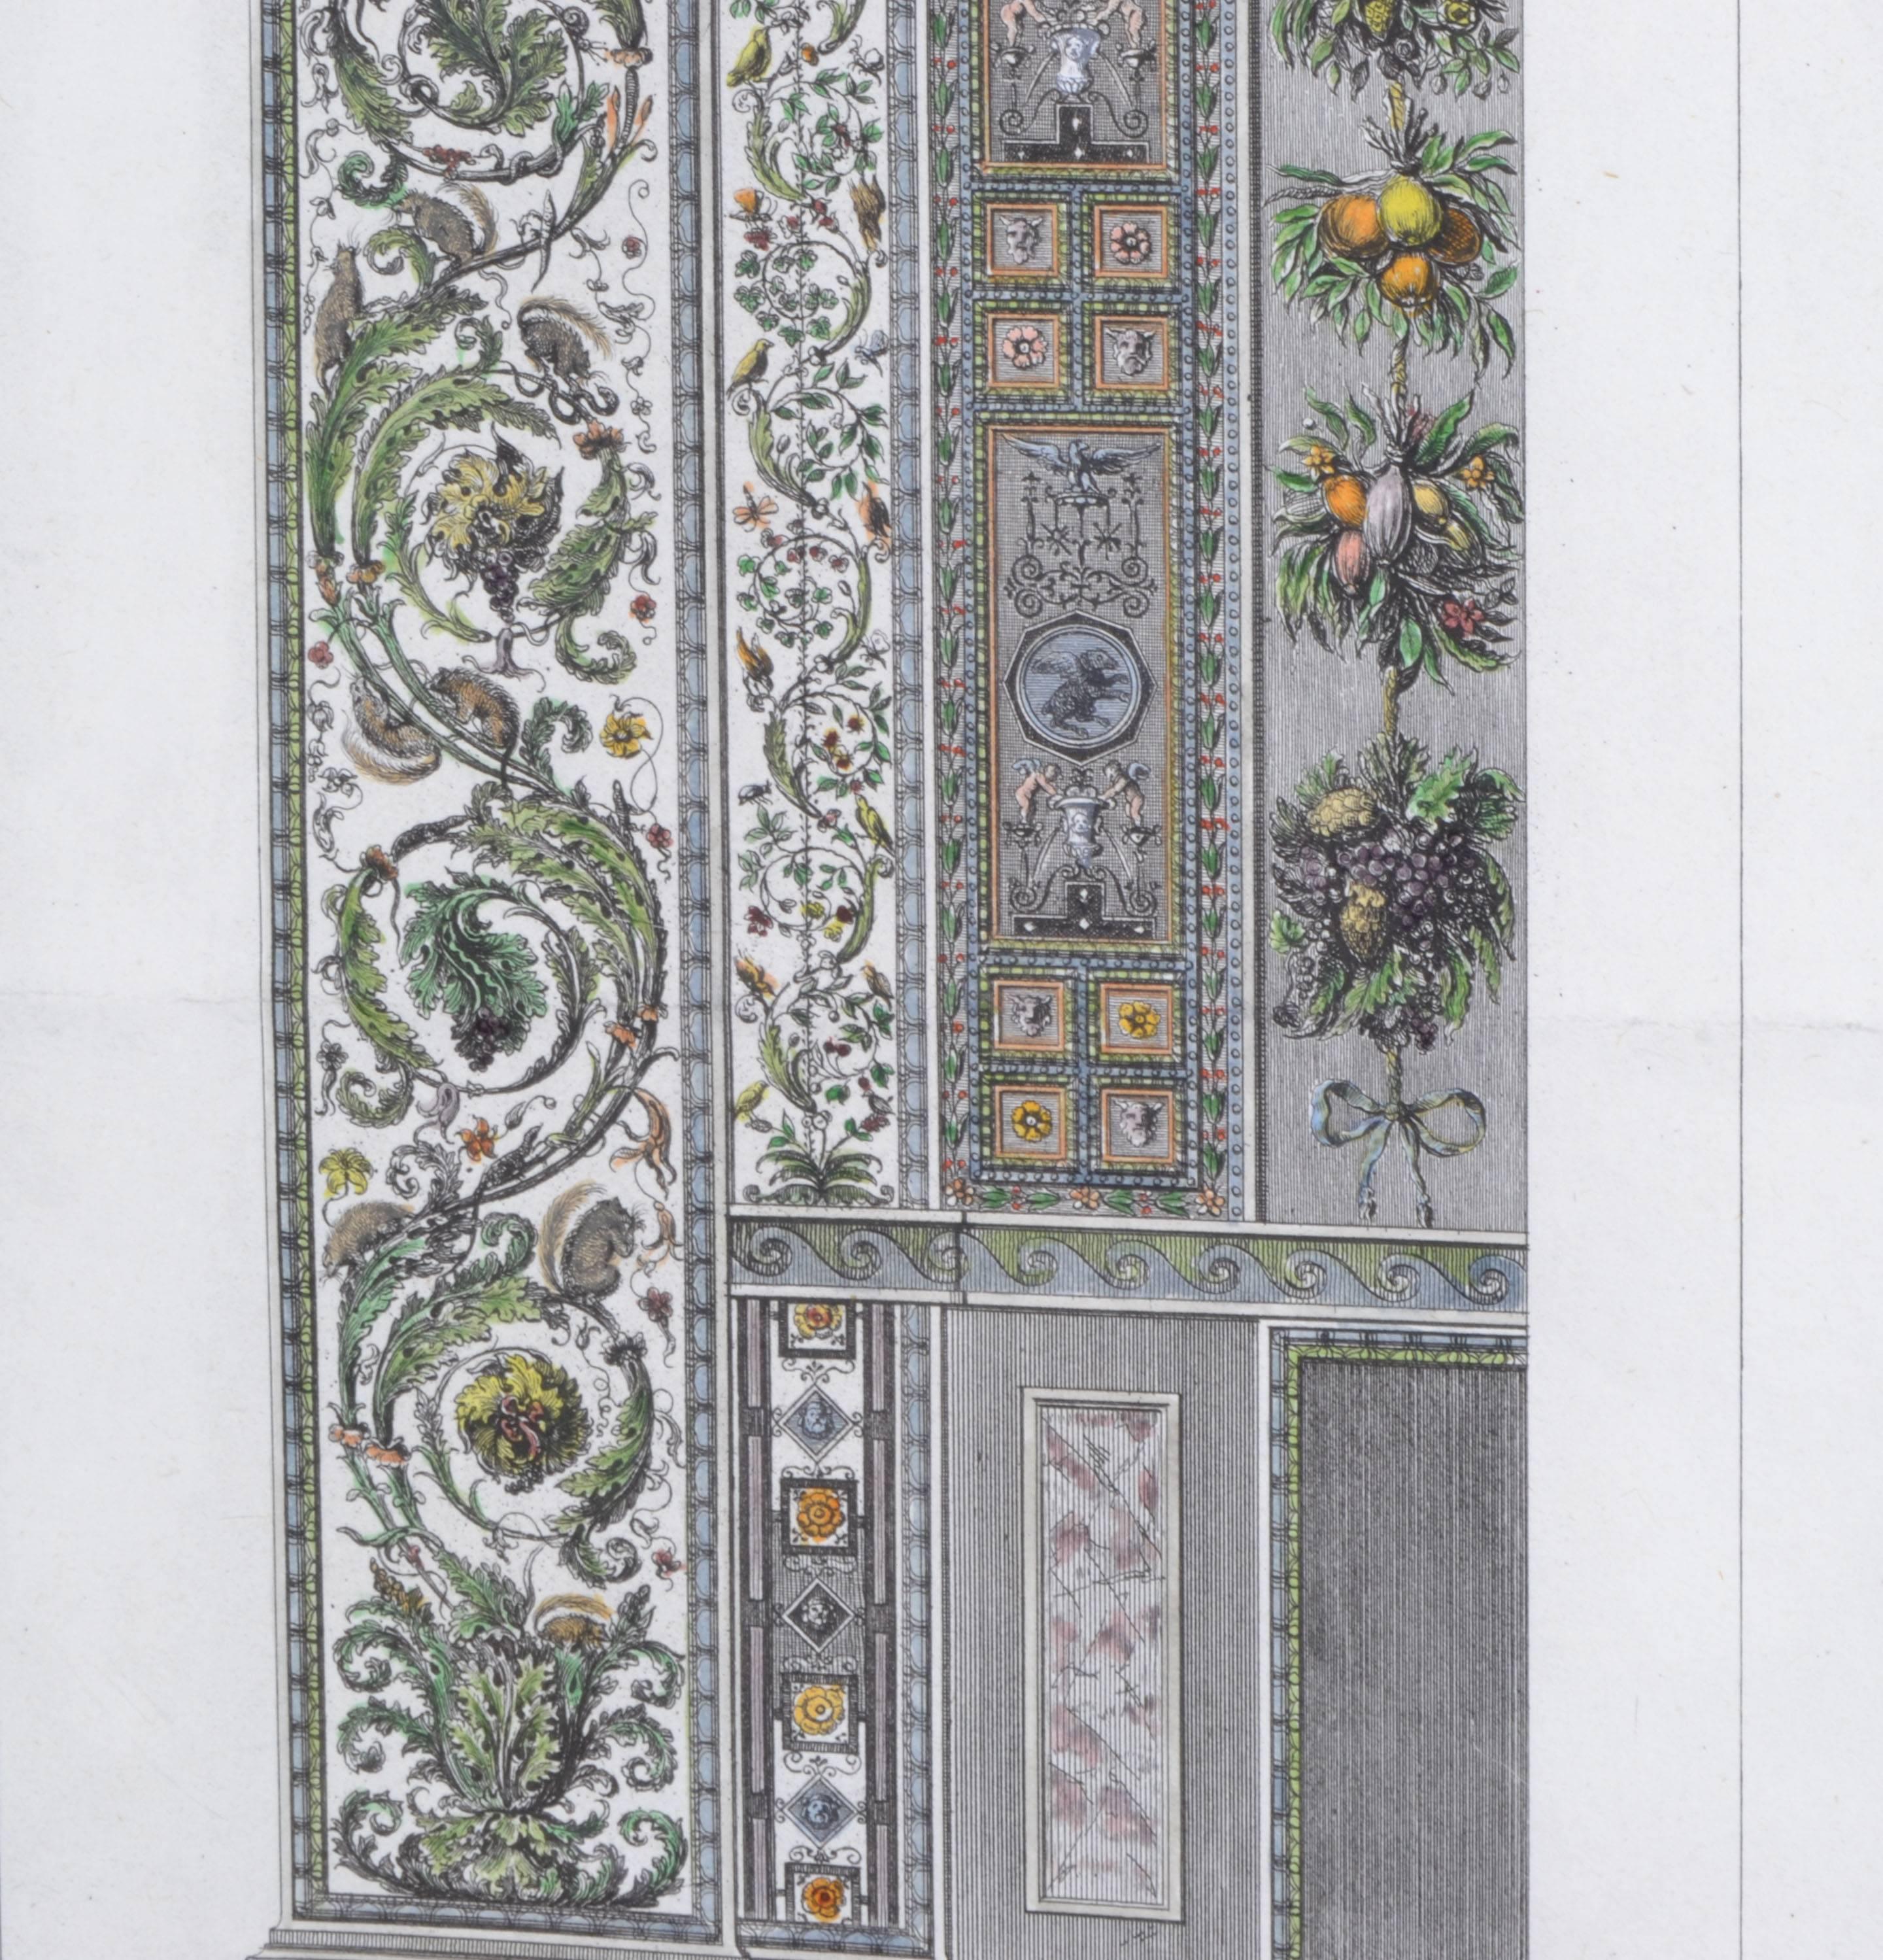 Paper Carlo Lasinio Etching of the Loggia Del Vaticano by Raffaello D'urbino. Set/4 For Sale